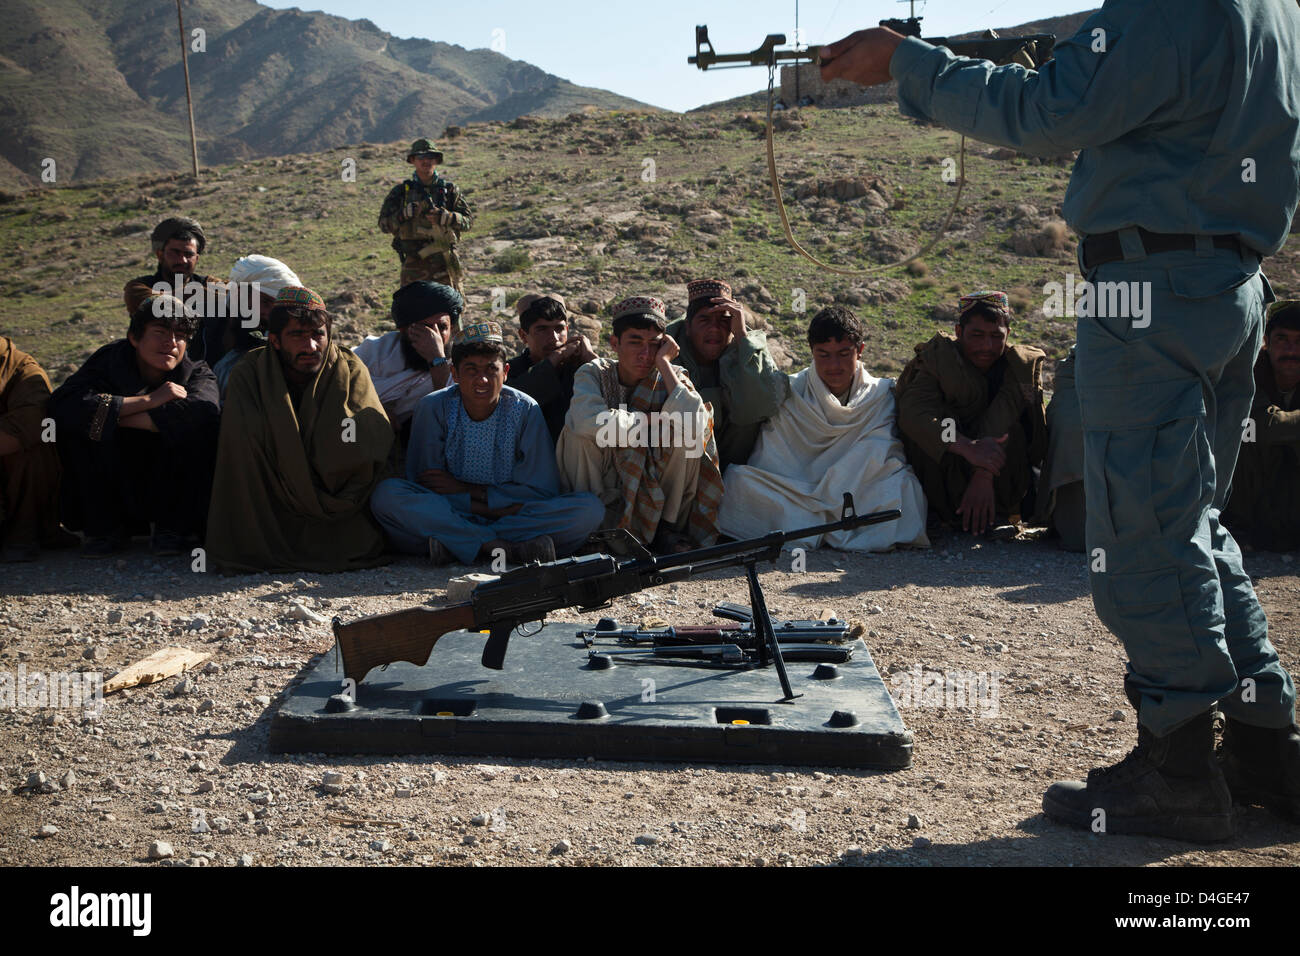 Afghanische Polizei Rekruten erhalten Waffentraining von afghanischen Nationalpolizei mit Sicherheit von Afghan National Army Special Forces 13. März 2013 in der Provinz Helmand, Afghanistan. Afghanische Polizei sind ein wichtiger Bestandteil der Aufstandsbekämpfung Aufwand in entlegenen Gebieten des Landes. Stockfoto